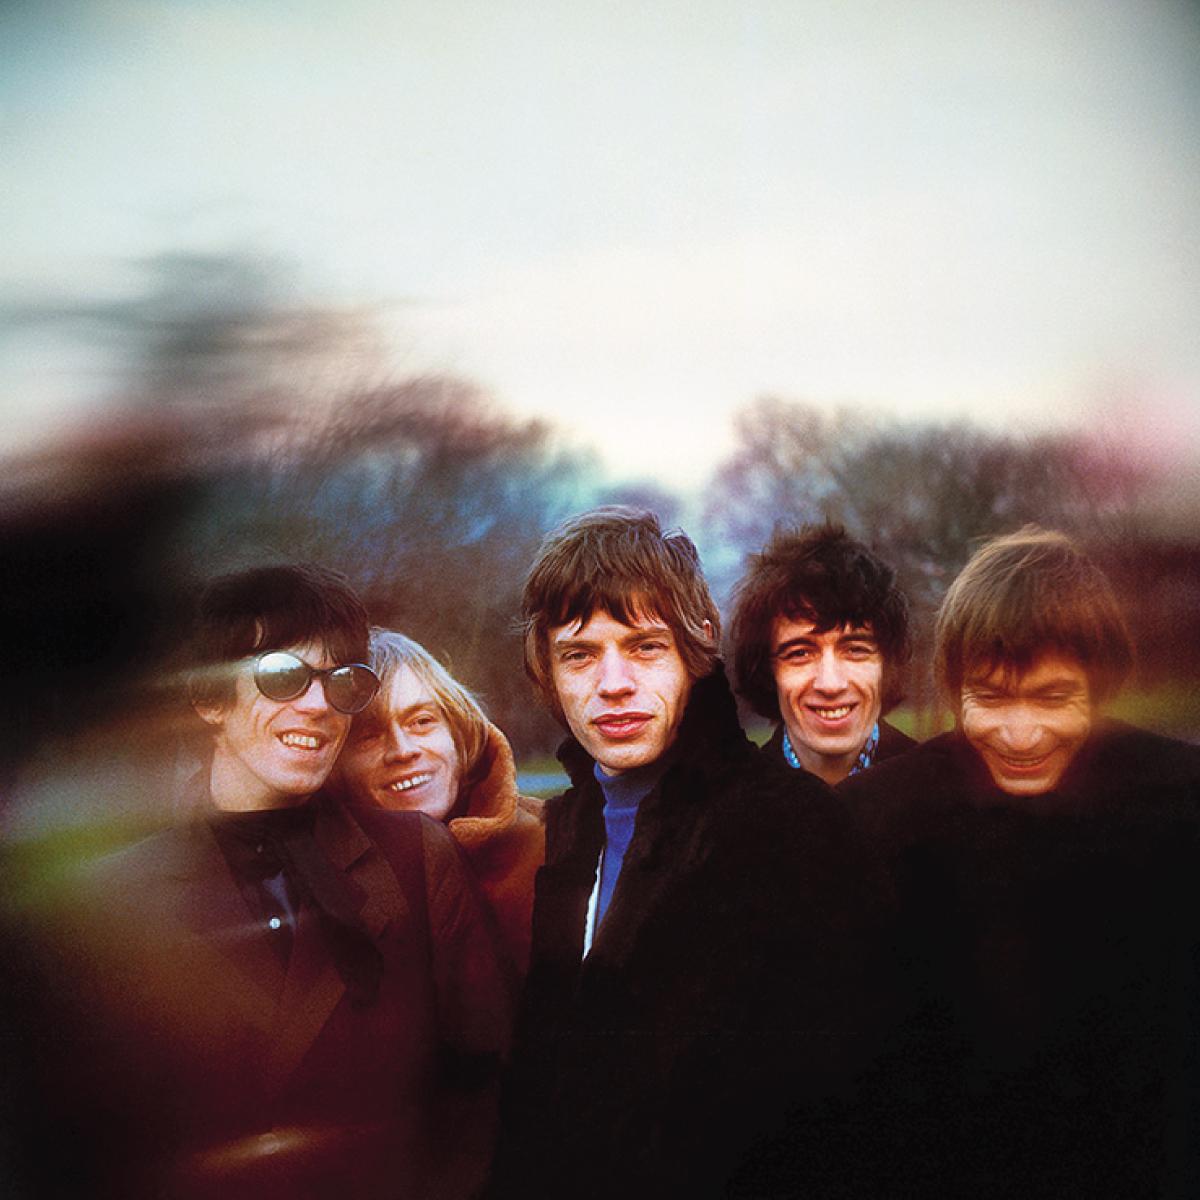 Die Rolling Stones, aufgenommen in London im Jahr 1965 von Gered Mankowitz. Mit Mick Jagger, Keith Richards, Charlie Watts, Brian Jones und Bill Wyman.

Dieses Bild der Band ist ein Out-Take aus der berühmten Between The Buttons-Session, die Ende